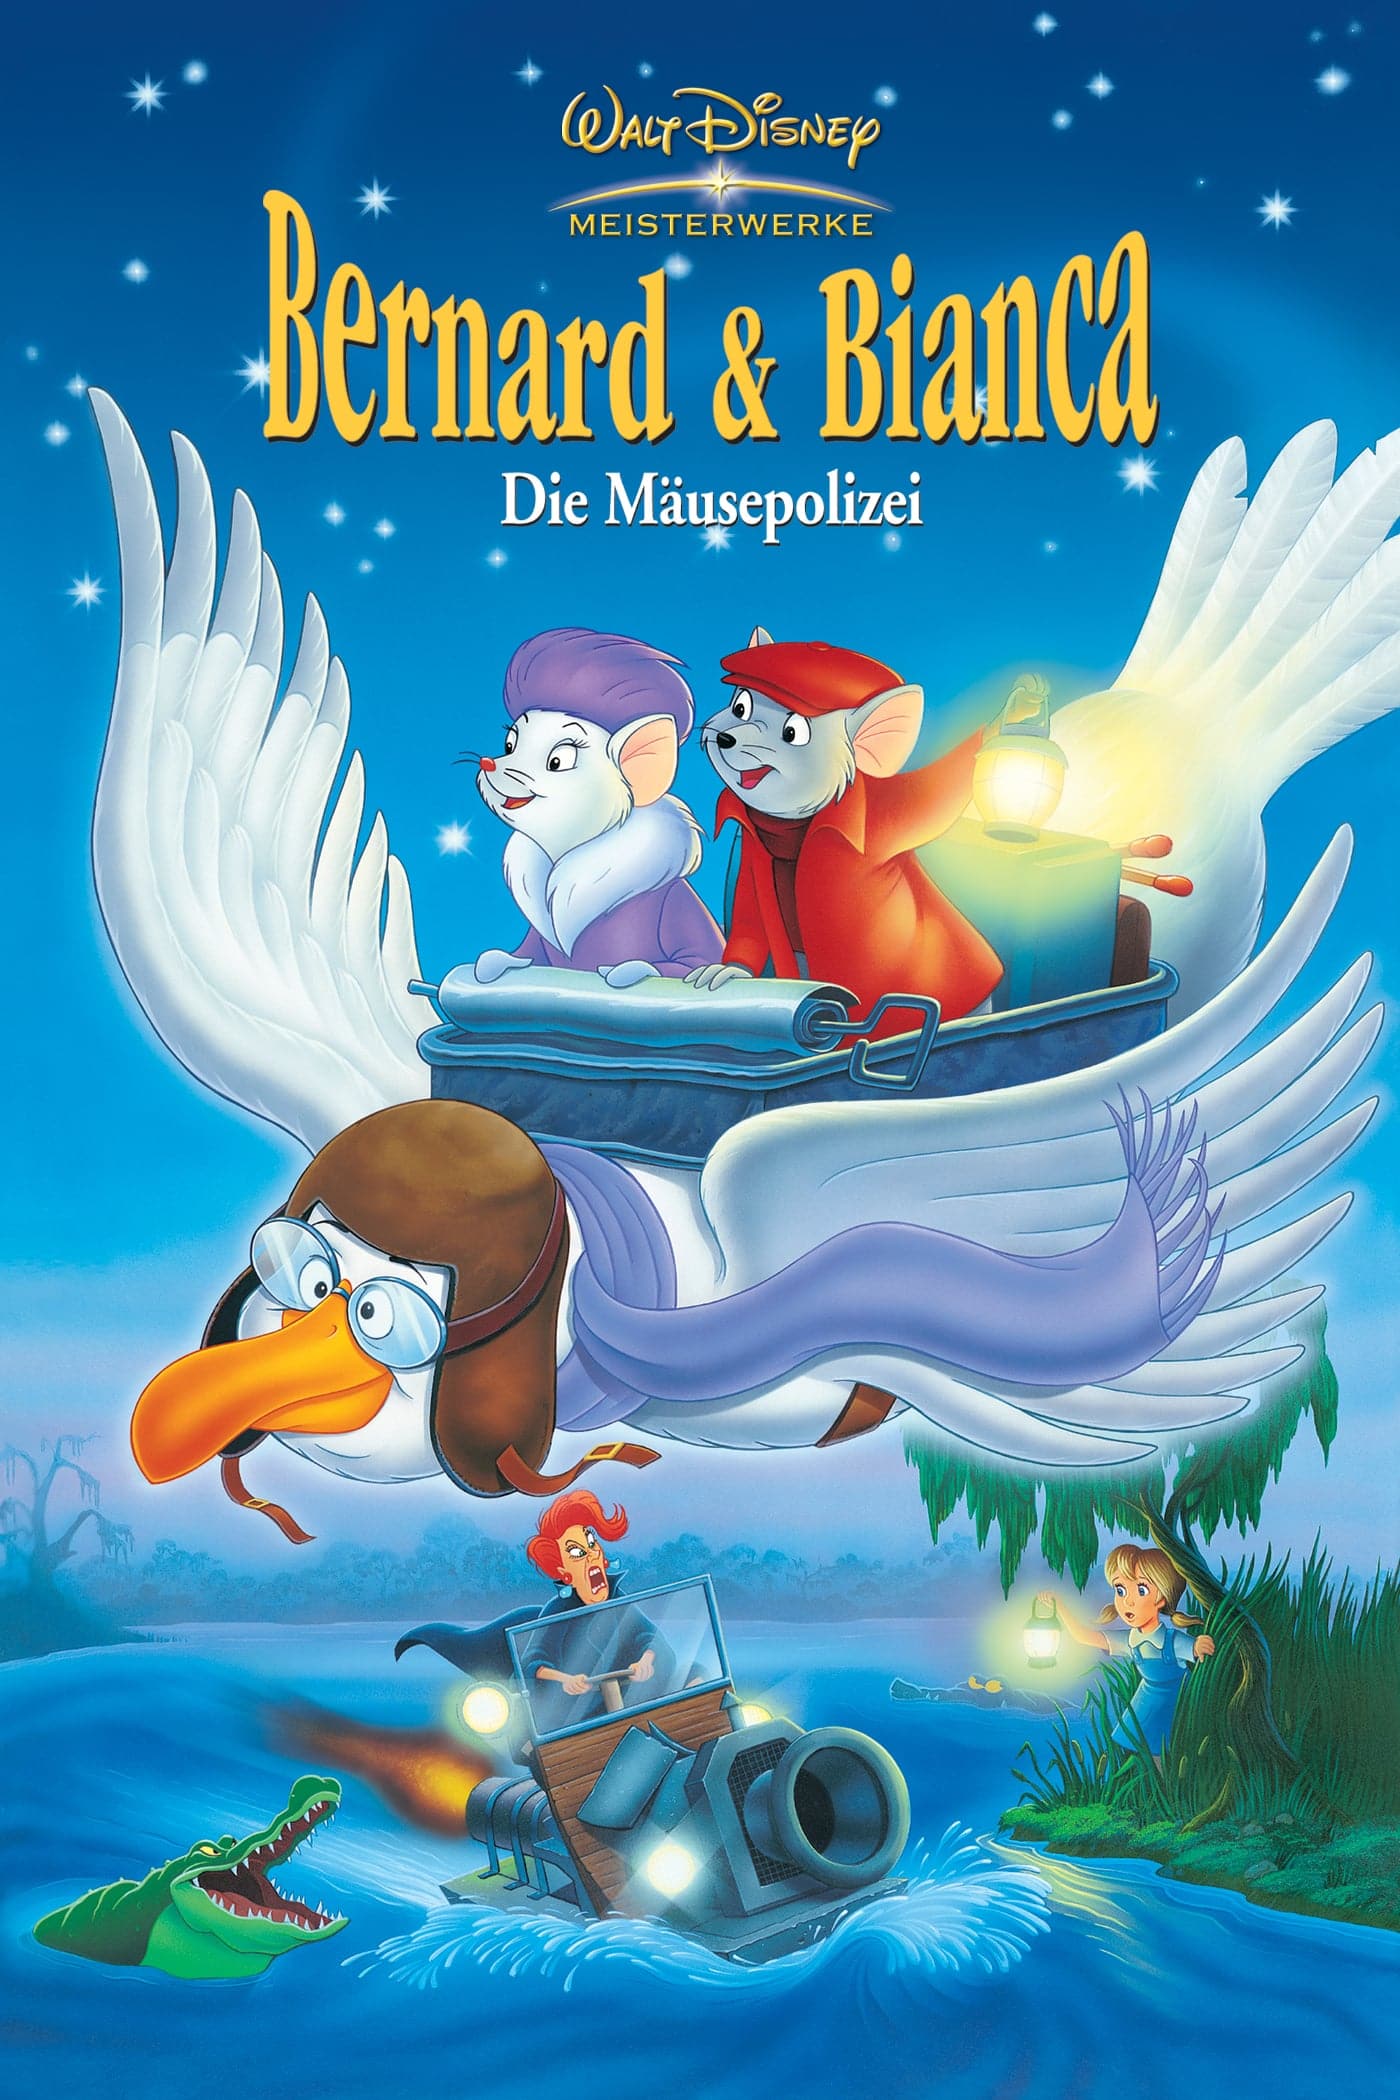 Plakat von "Bernard & Bianca - Die Mäusepolizei"